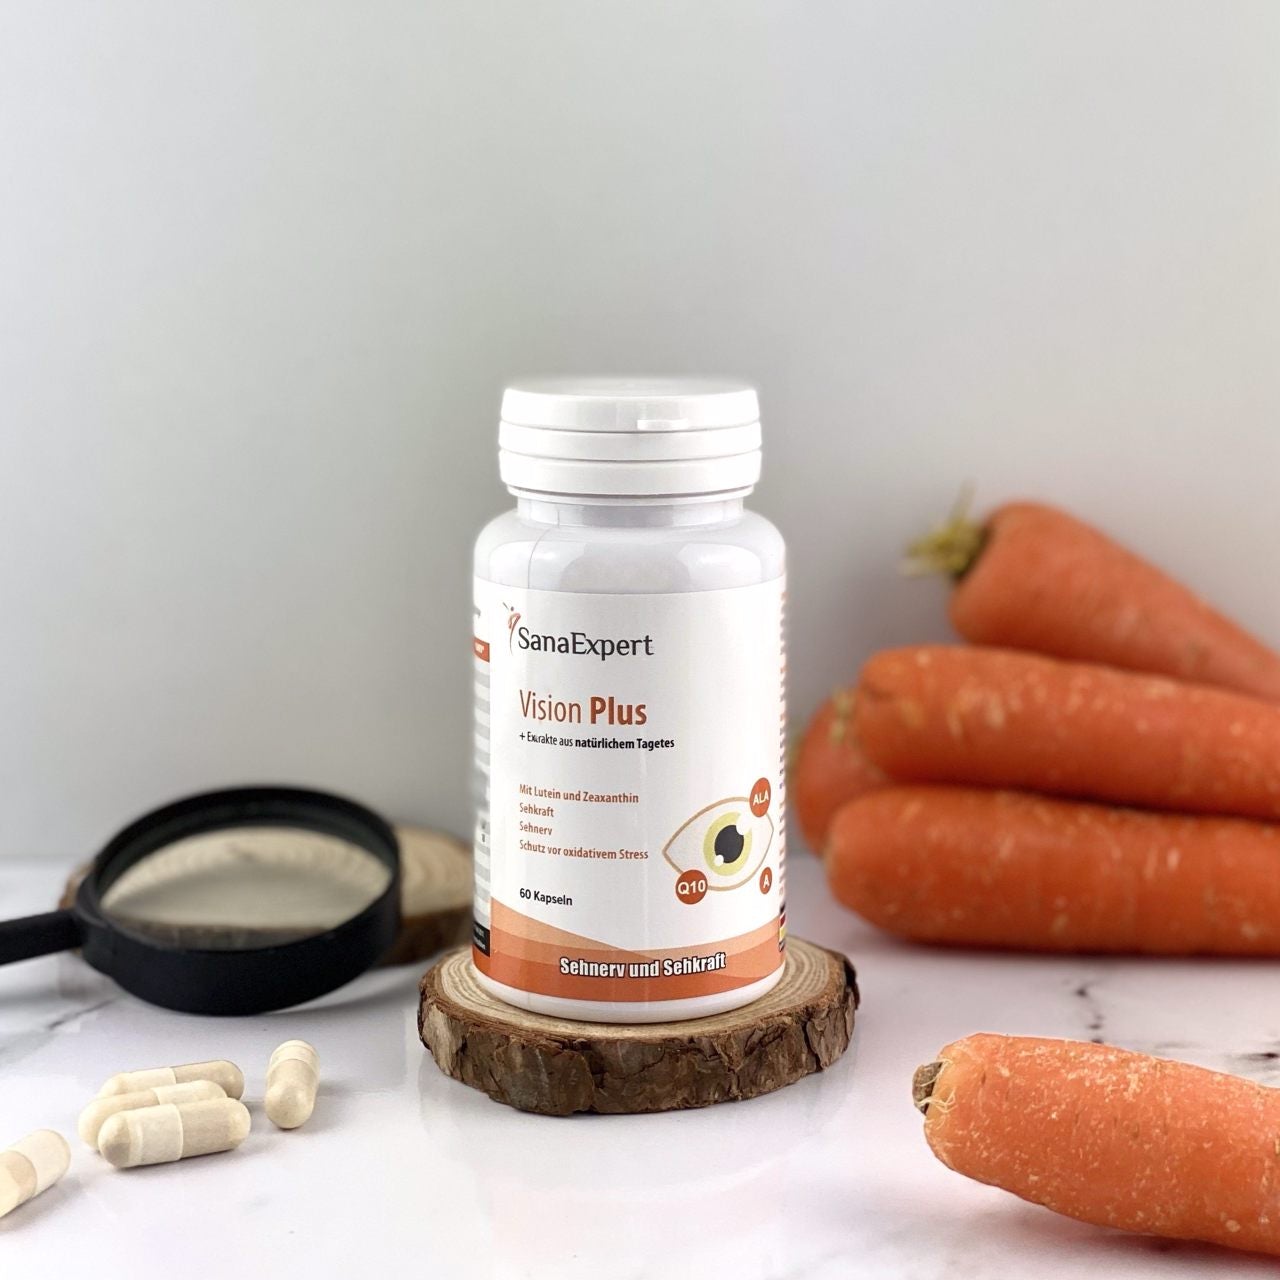 Eine Flasche SanaExpert Vision Plus auf einem Holzstück mit Karotten im Vordergrund, um die Natürlichkeit und den gesundheitlichen Nutzen für die Augen zu betonen.